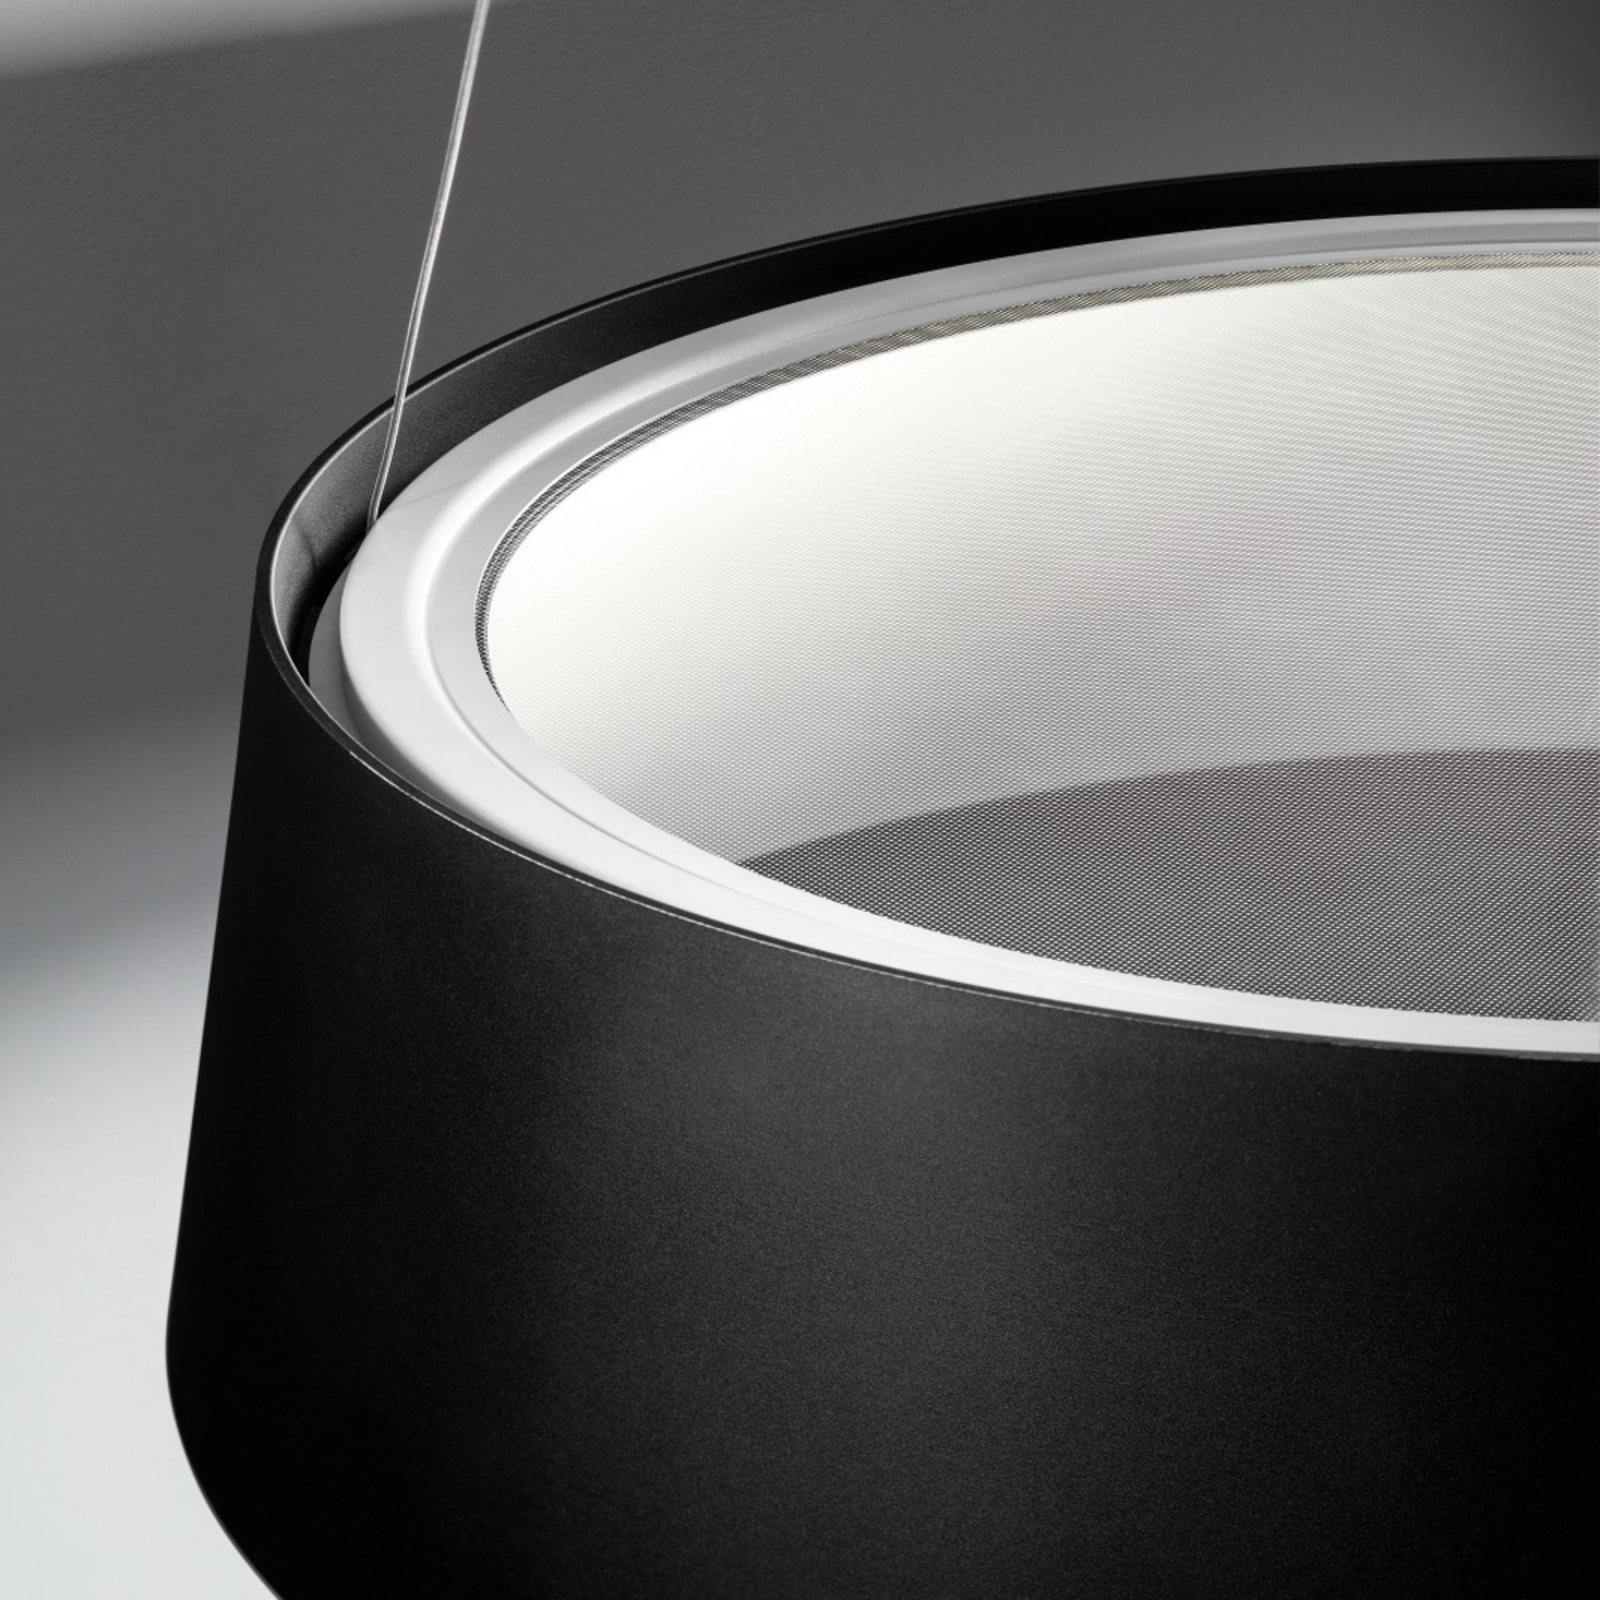 Stilnovo Oxygen LED-Hängeleuchte, schwarz, Ø 56 cm